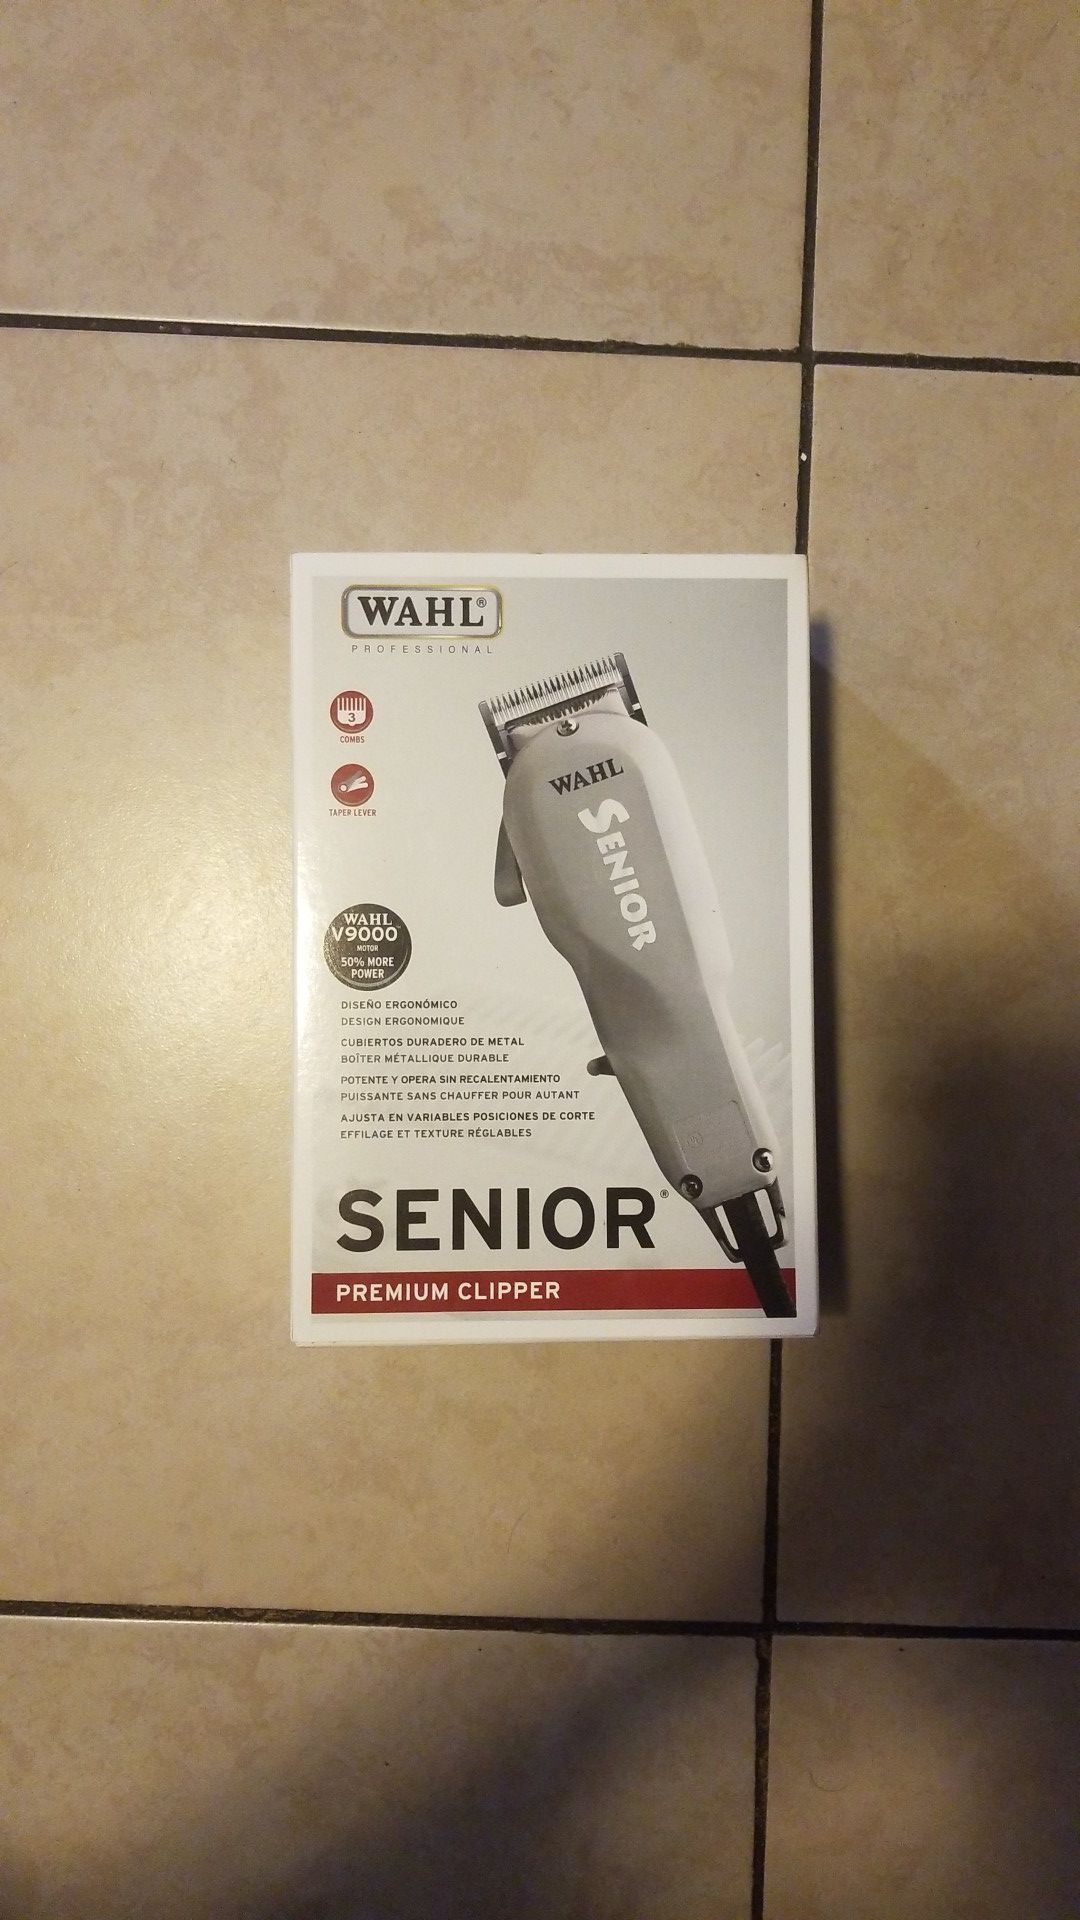 Wahl senior premium clipper